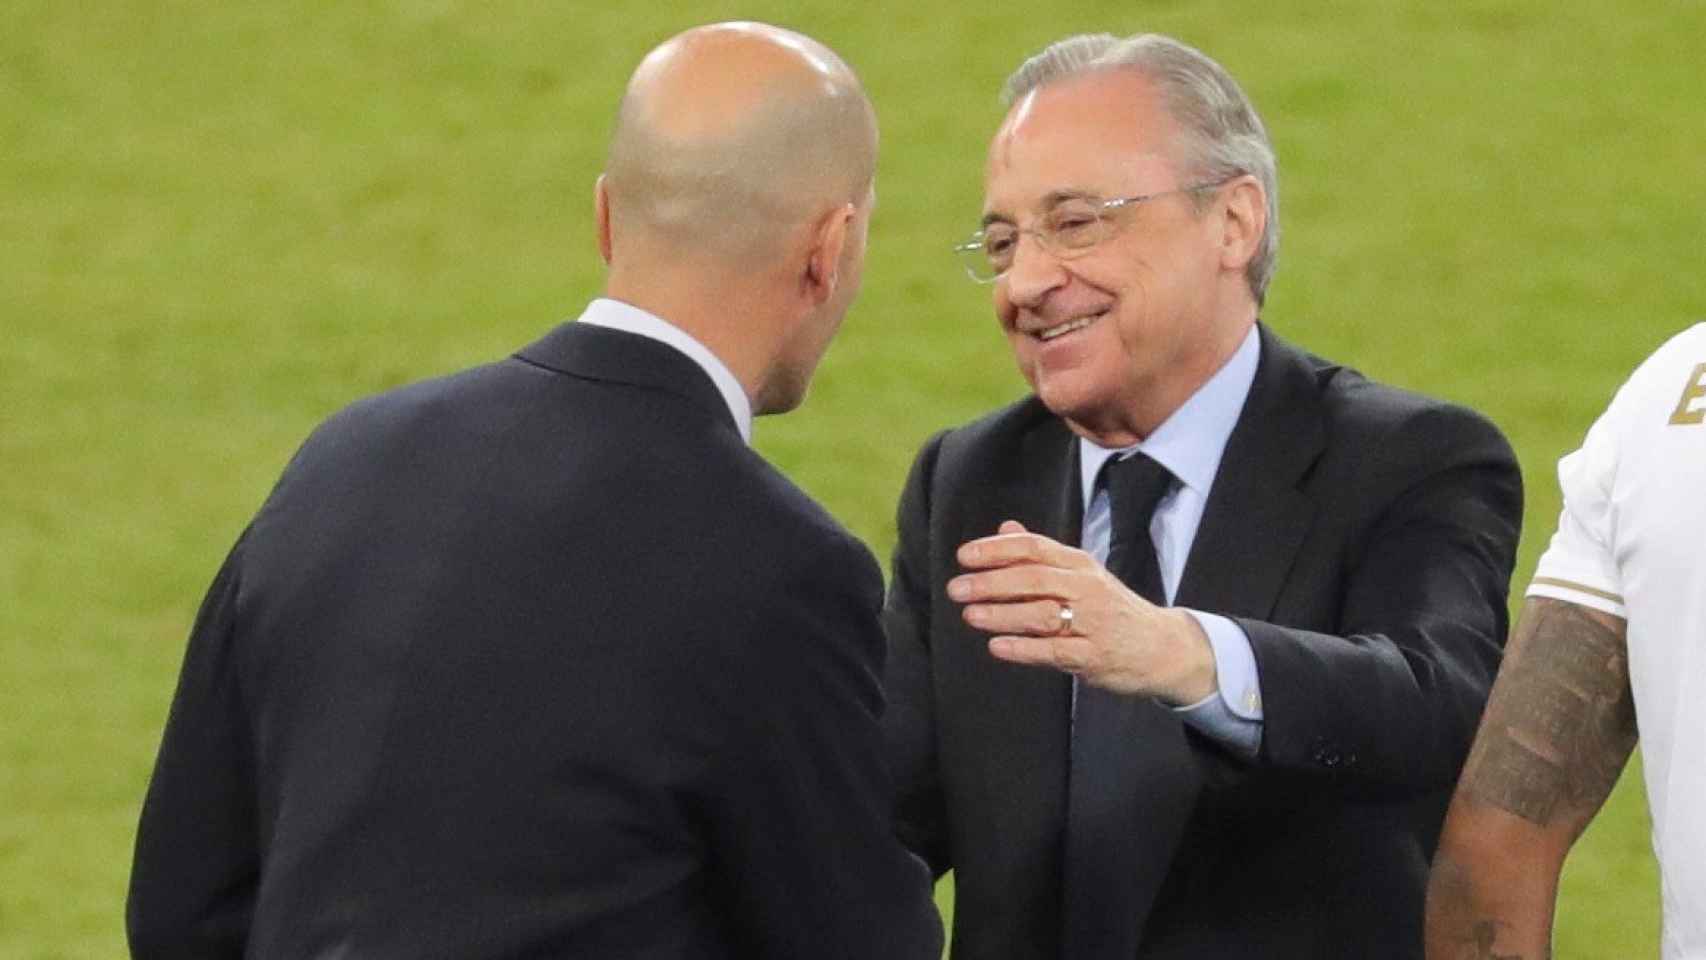 Florentino Pérez saluda a Zinedine Zidane antes de recoger la medalla de campeón